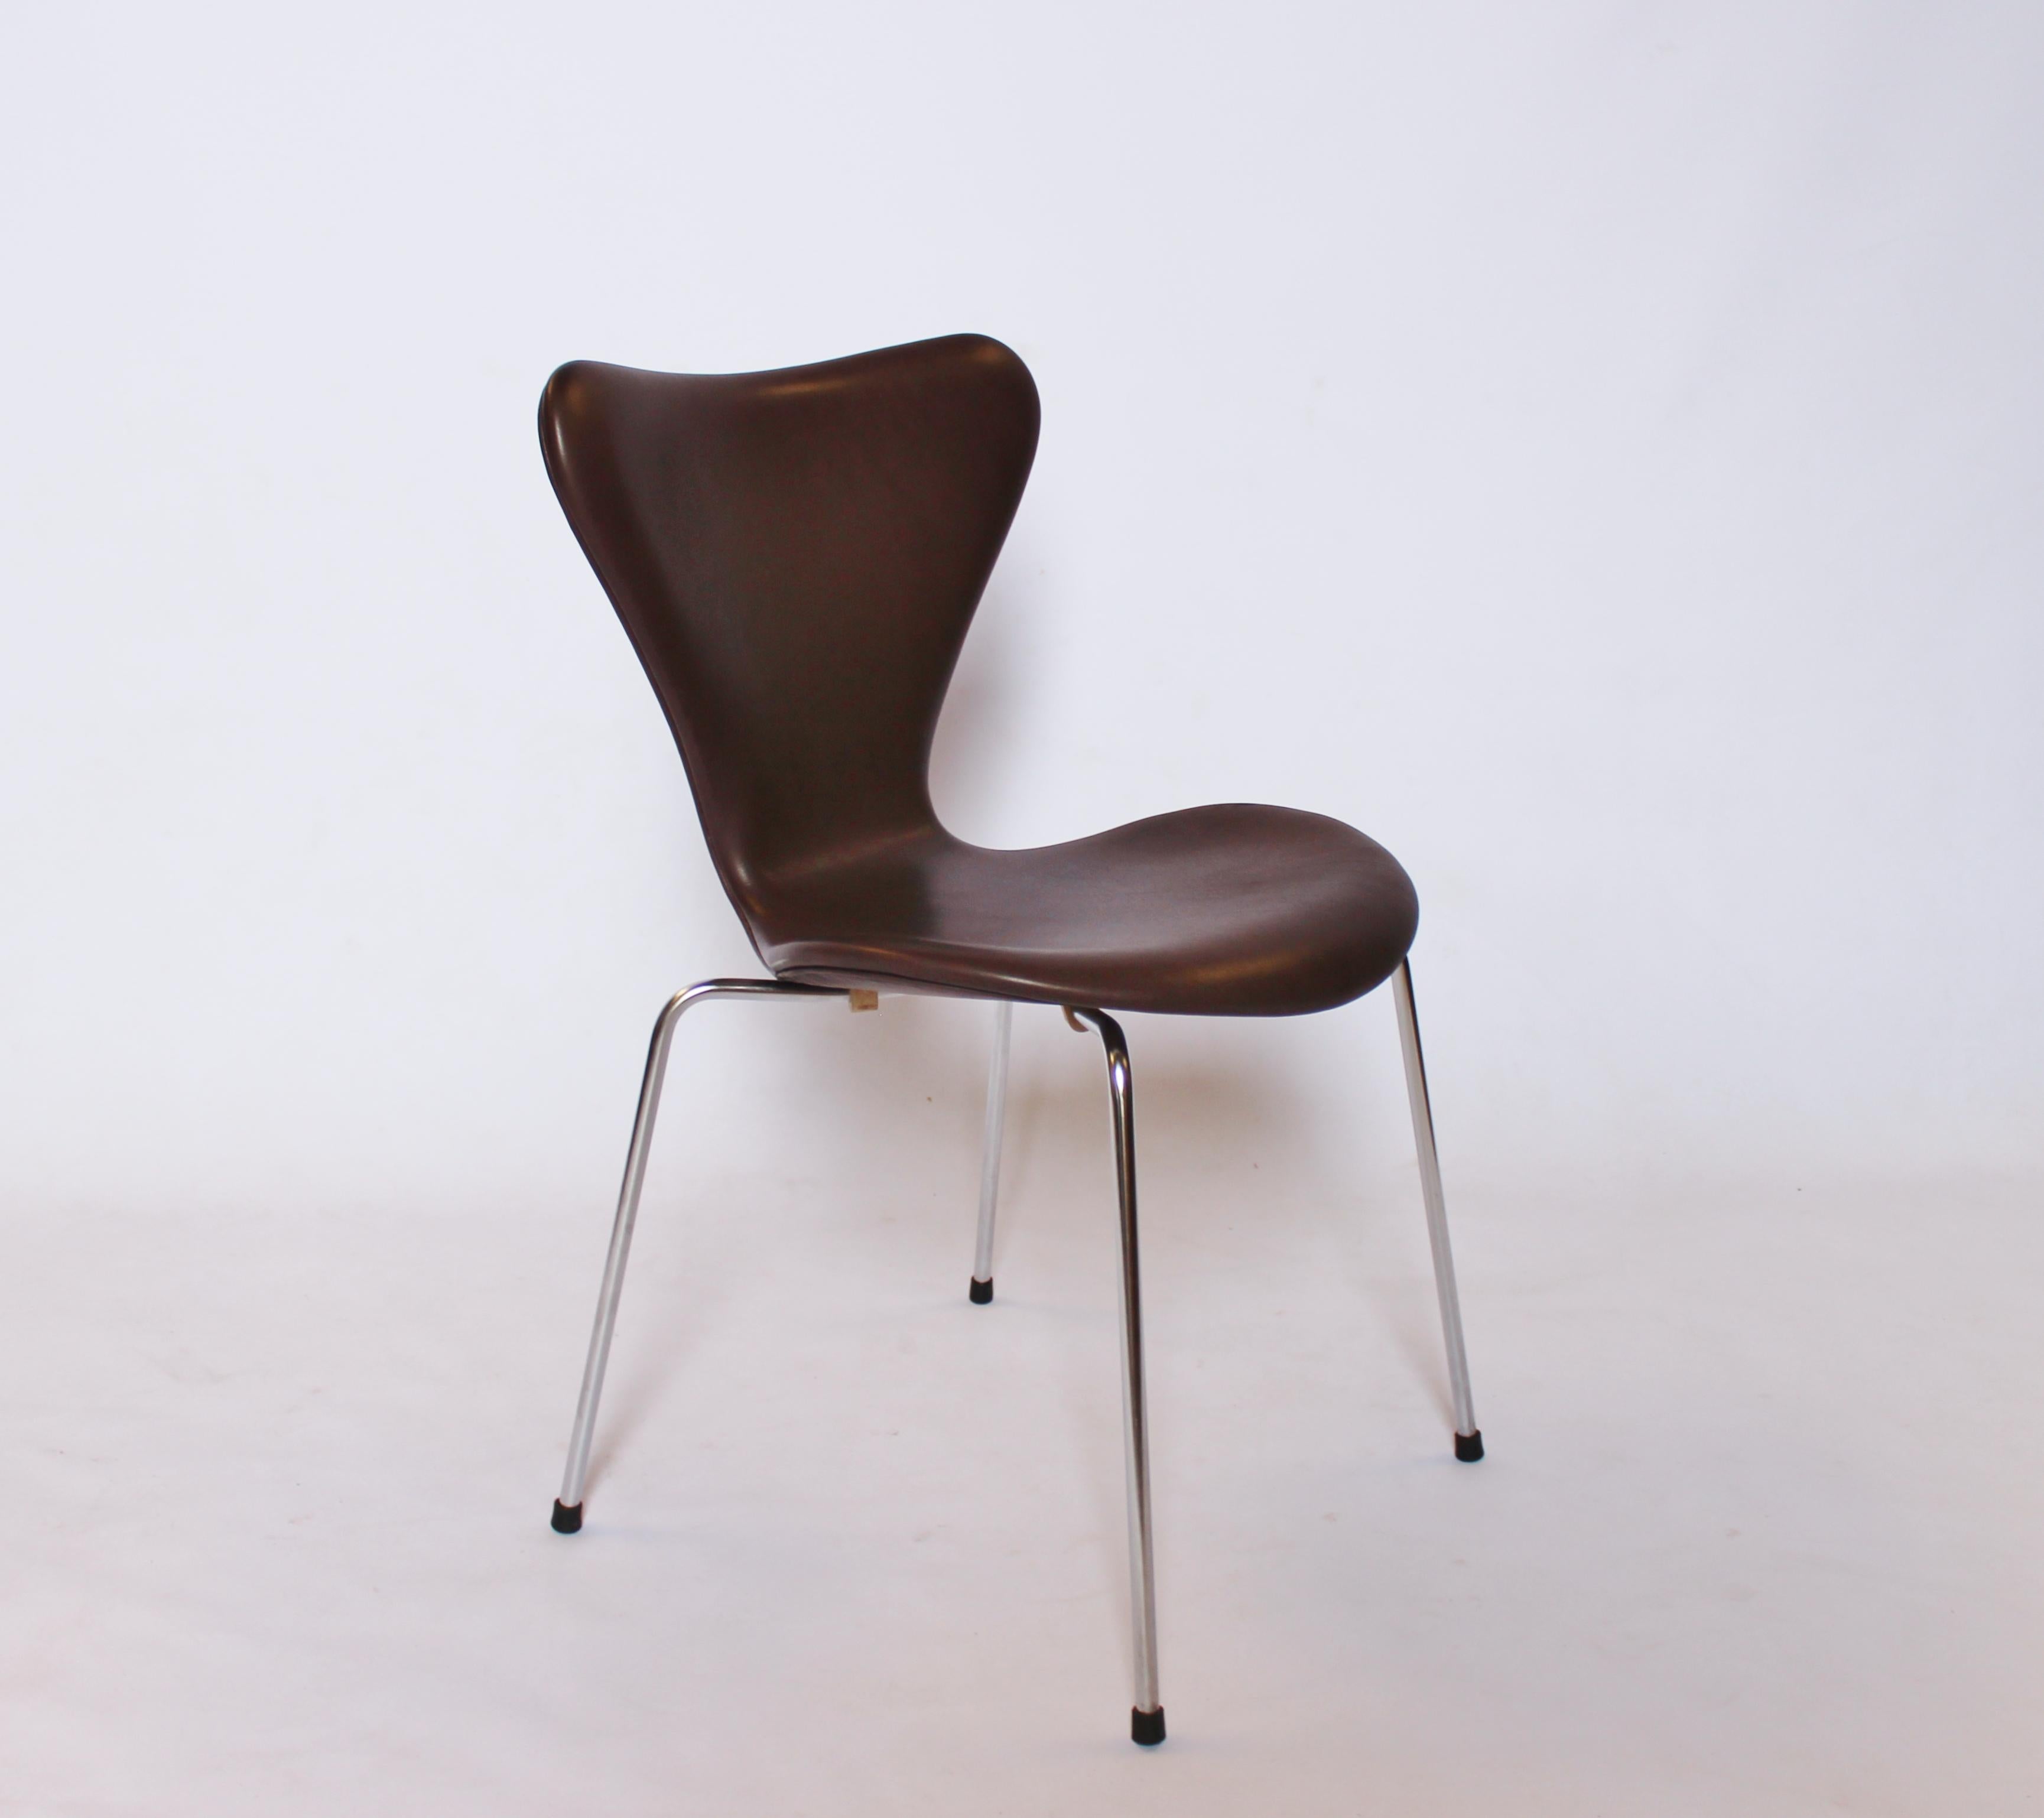 Scandinavian Modern Set of 4 Series 7 Chairs, Model 3107, by Arne Jacobsen and Fritz Hansen, 1967